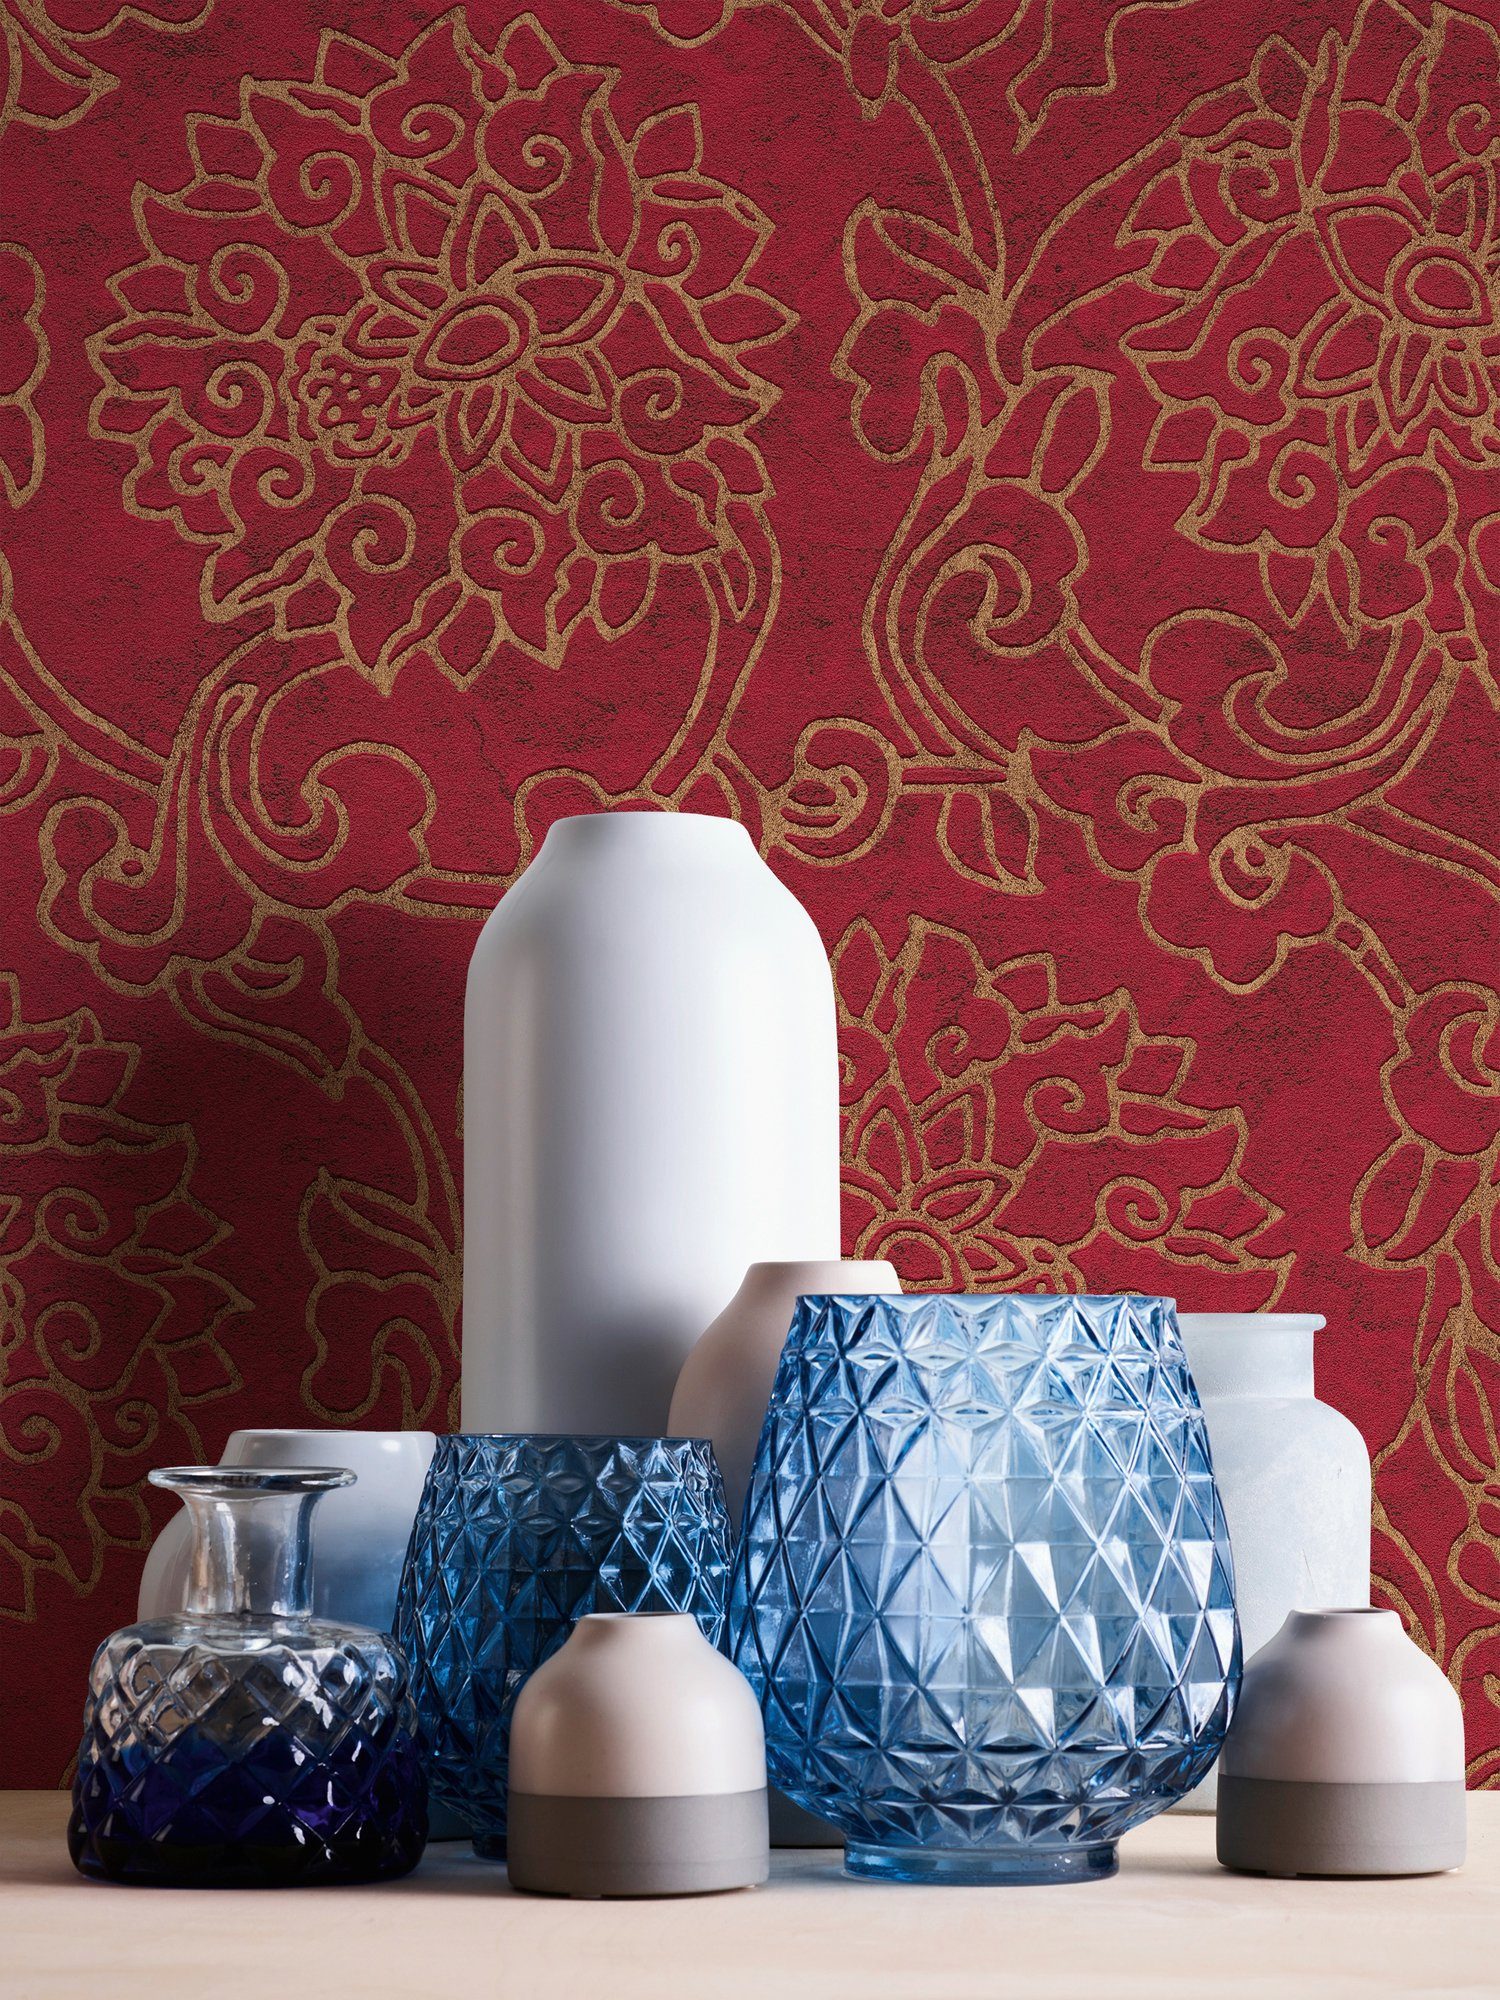 A.S. Création Vliestapete Fusion, ornamental, aufgeschäumt, blutrot/gold Asian Tapete gemustert, Japanisch Ornament